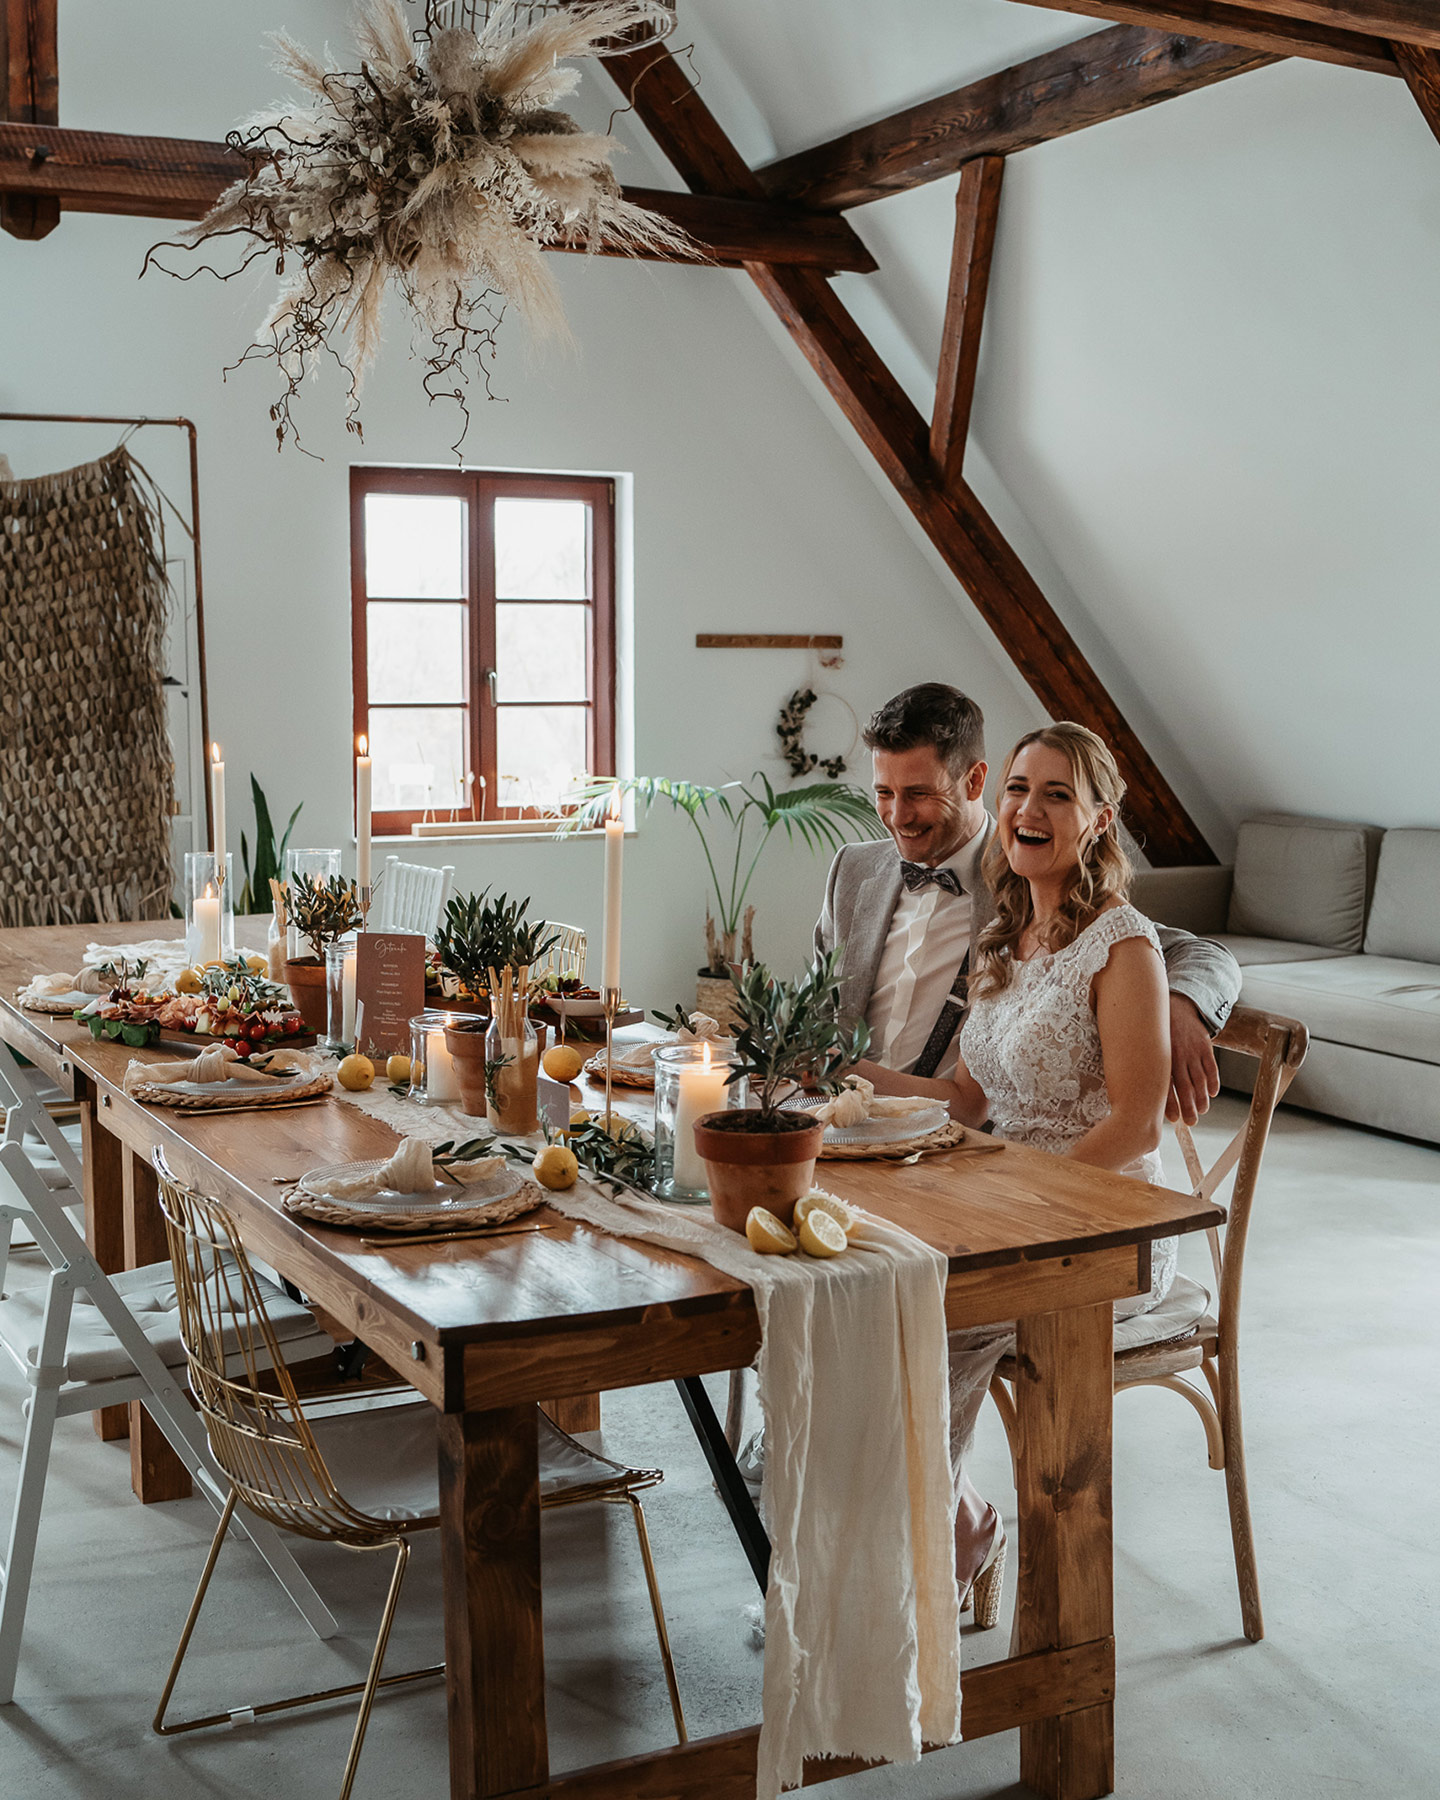 Braut und Bräutigam sitzen an ihren Plätzen an der Hochzeitstafel. Die rustikale Tafel ist mit Greenery-Elementen wie Eukalyptus geschmückt. Windlichter sorgen für romantische Stimmung.